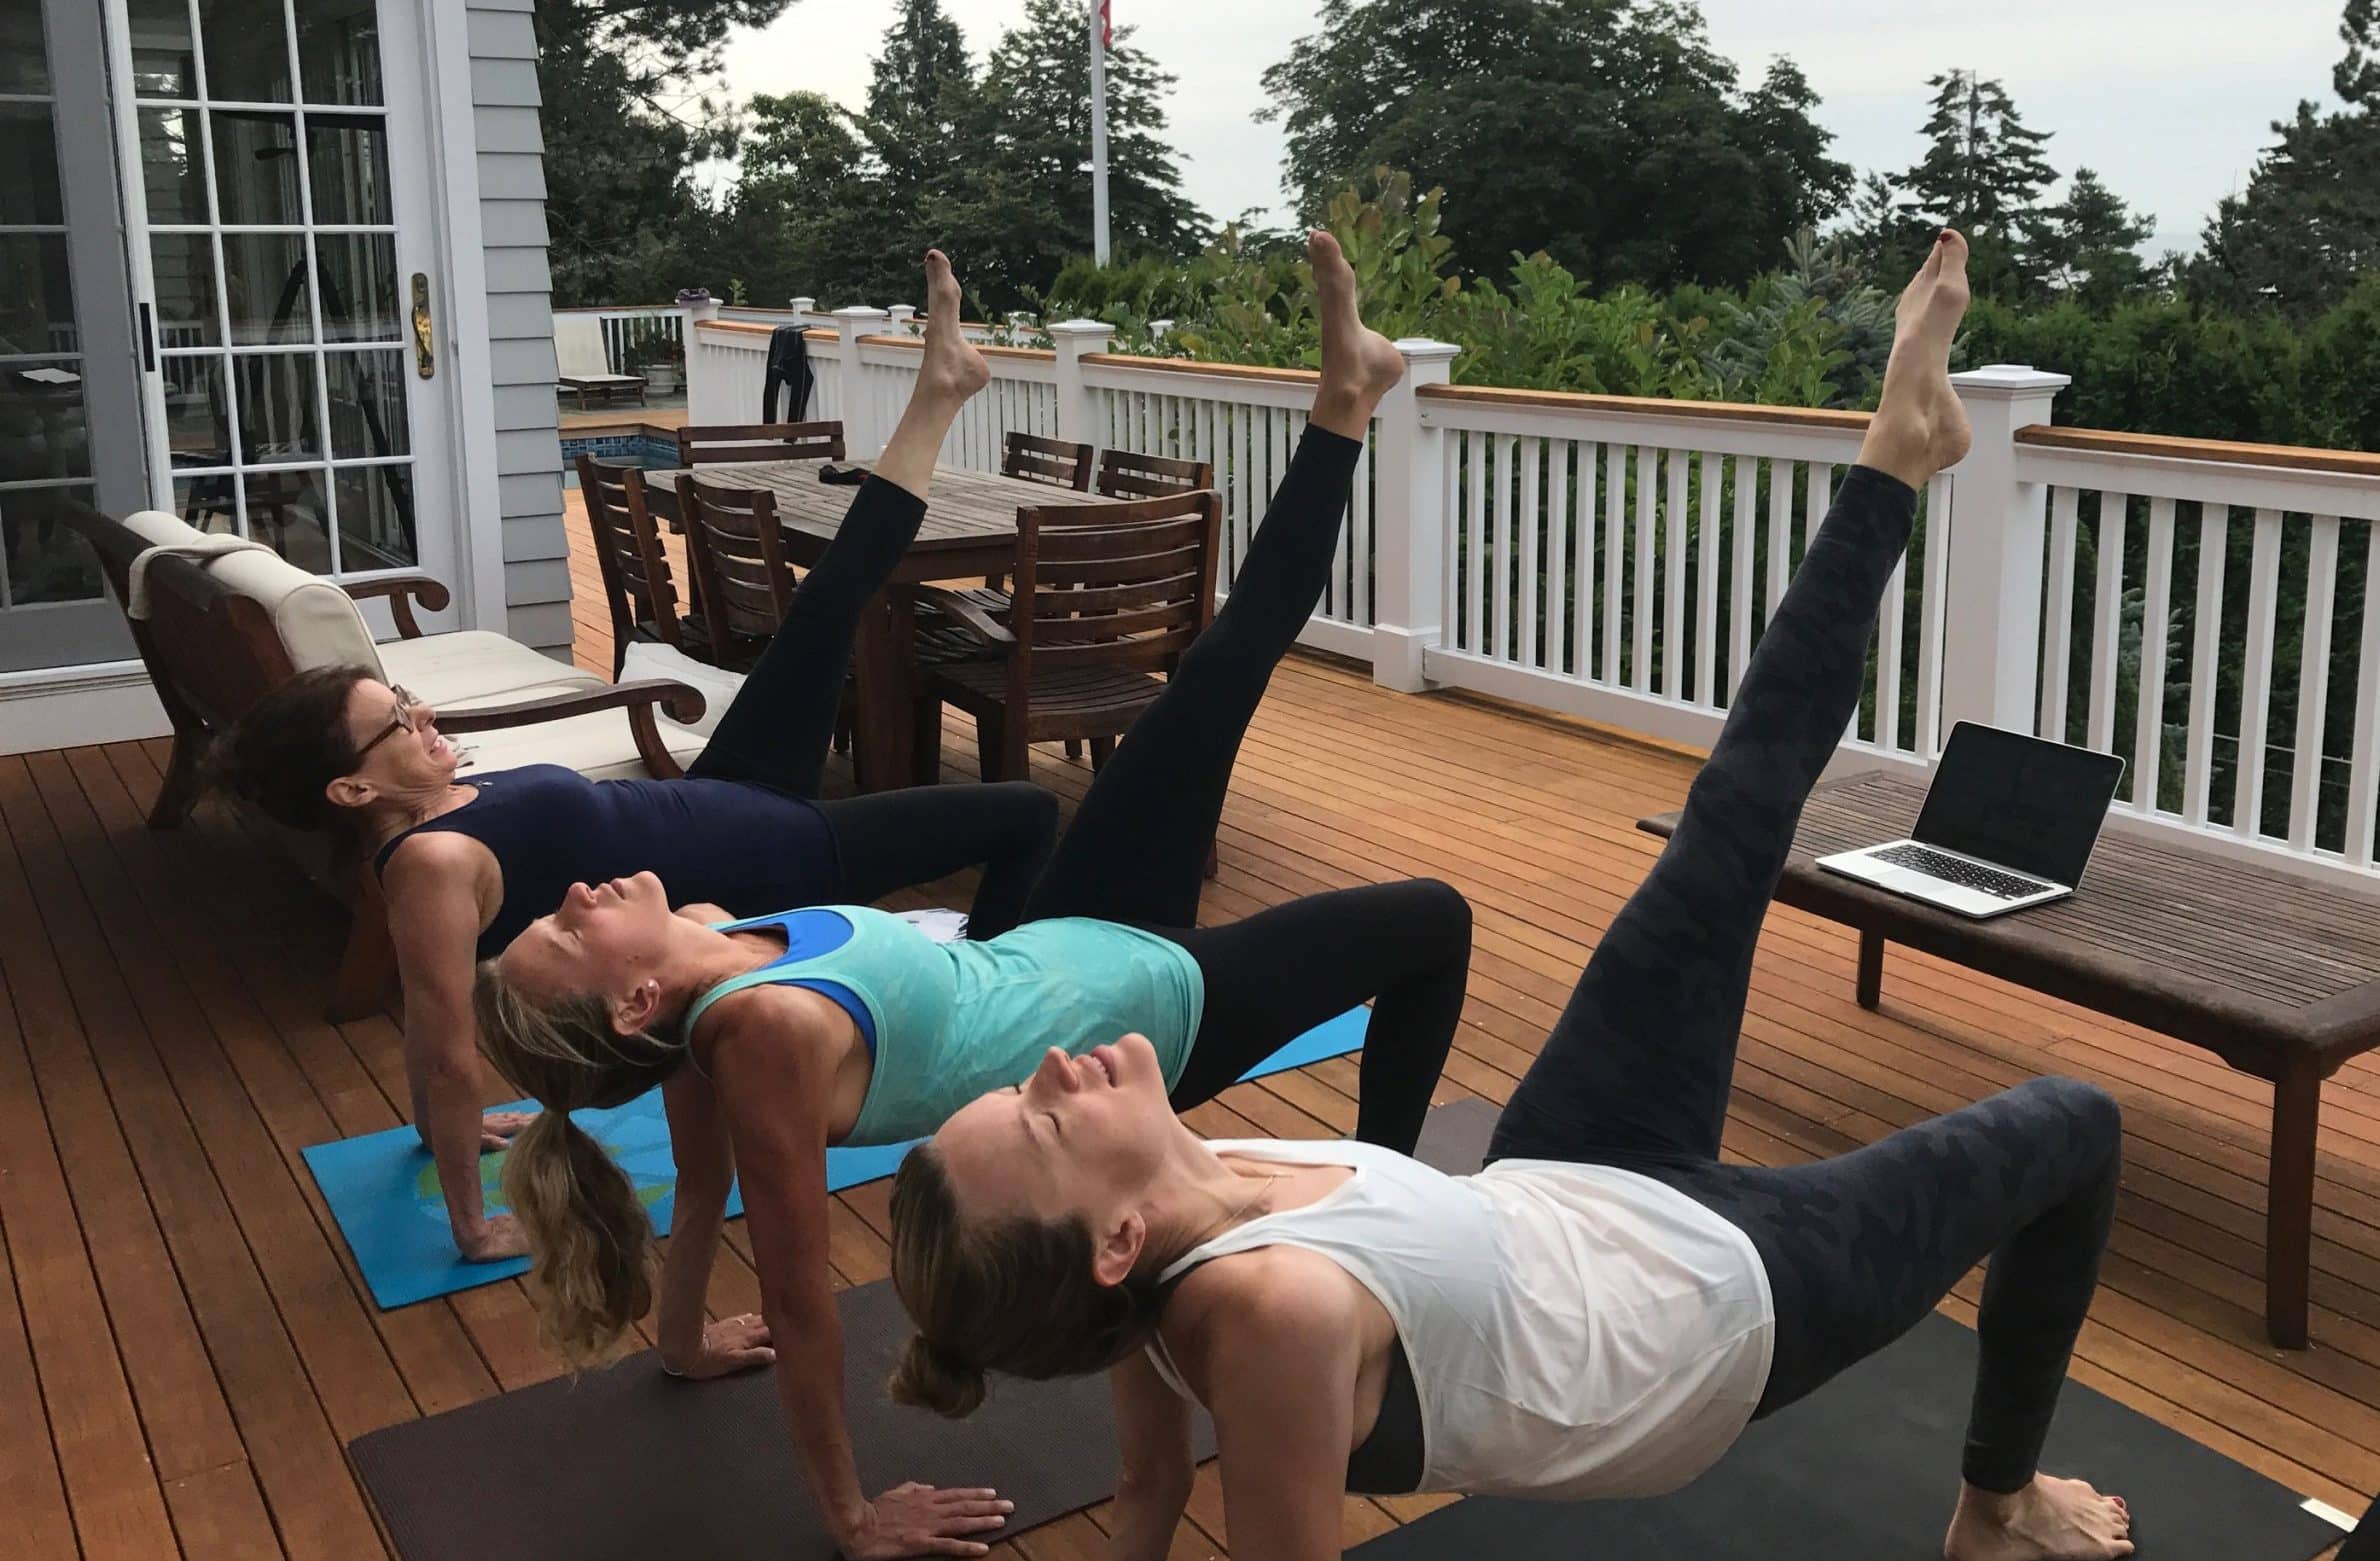 Yoga in Maine